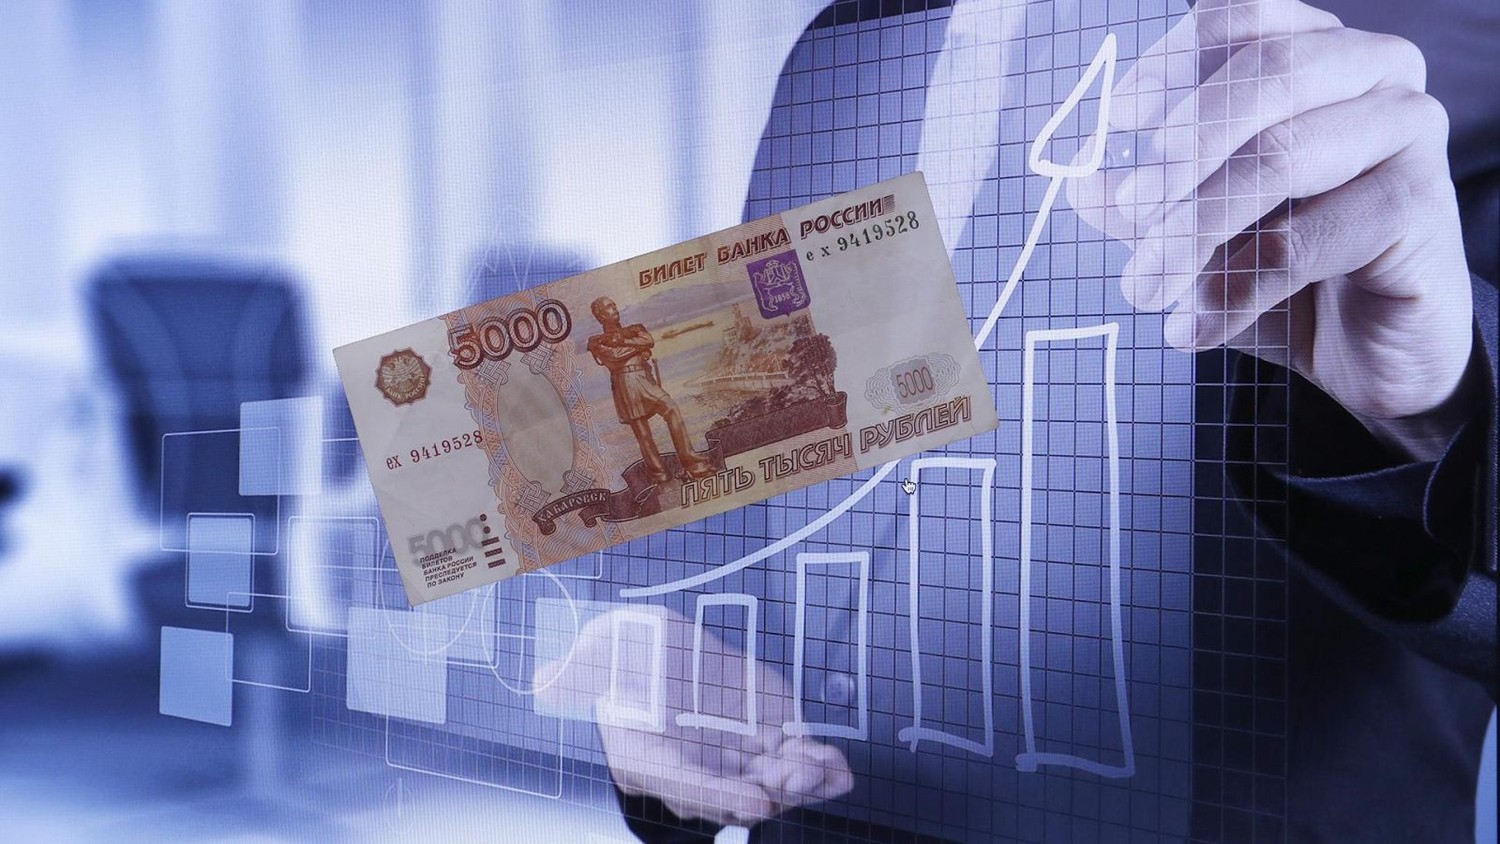 Несвежая зелень: банки РФ втрое снизили обязательства перед иностранцами